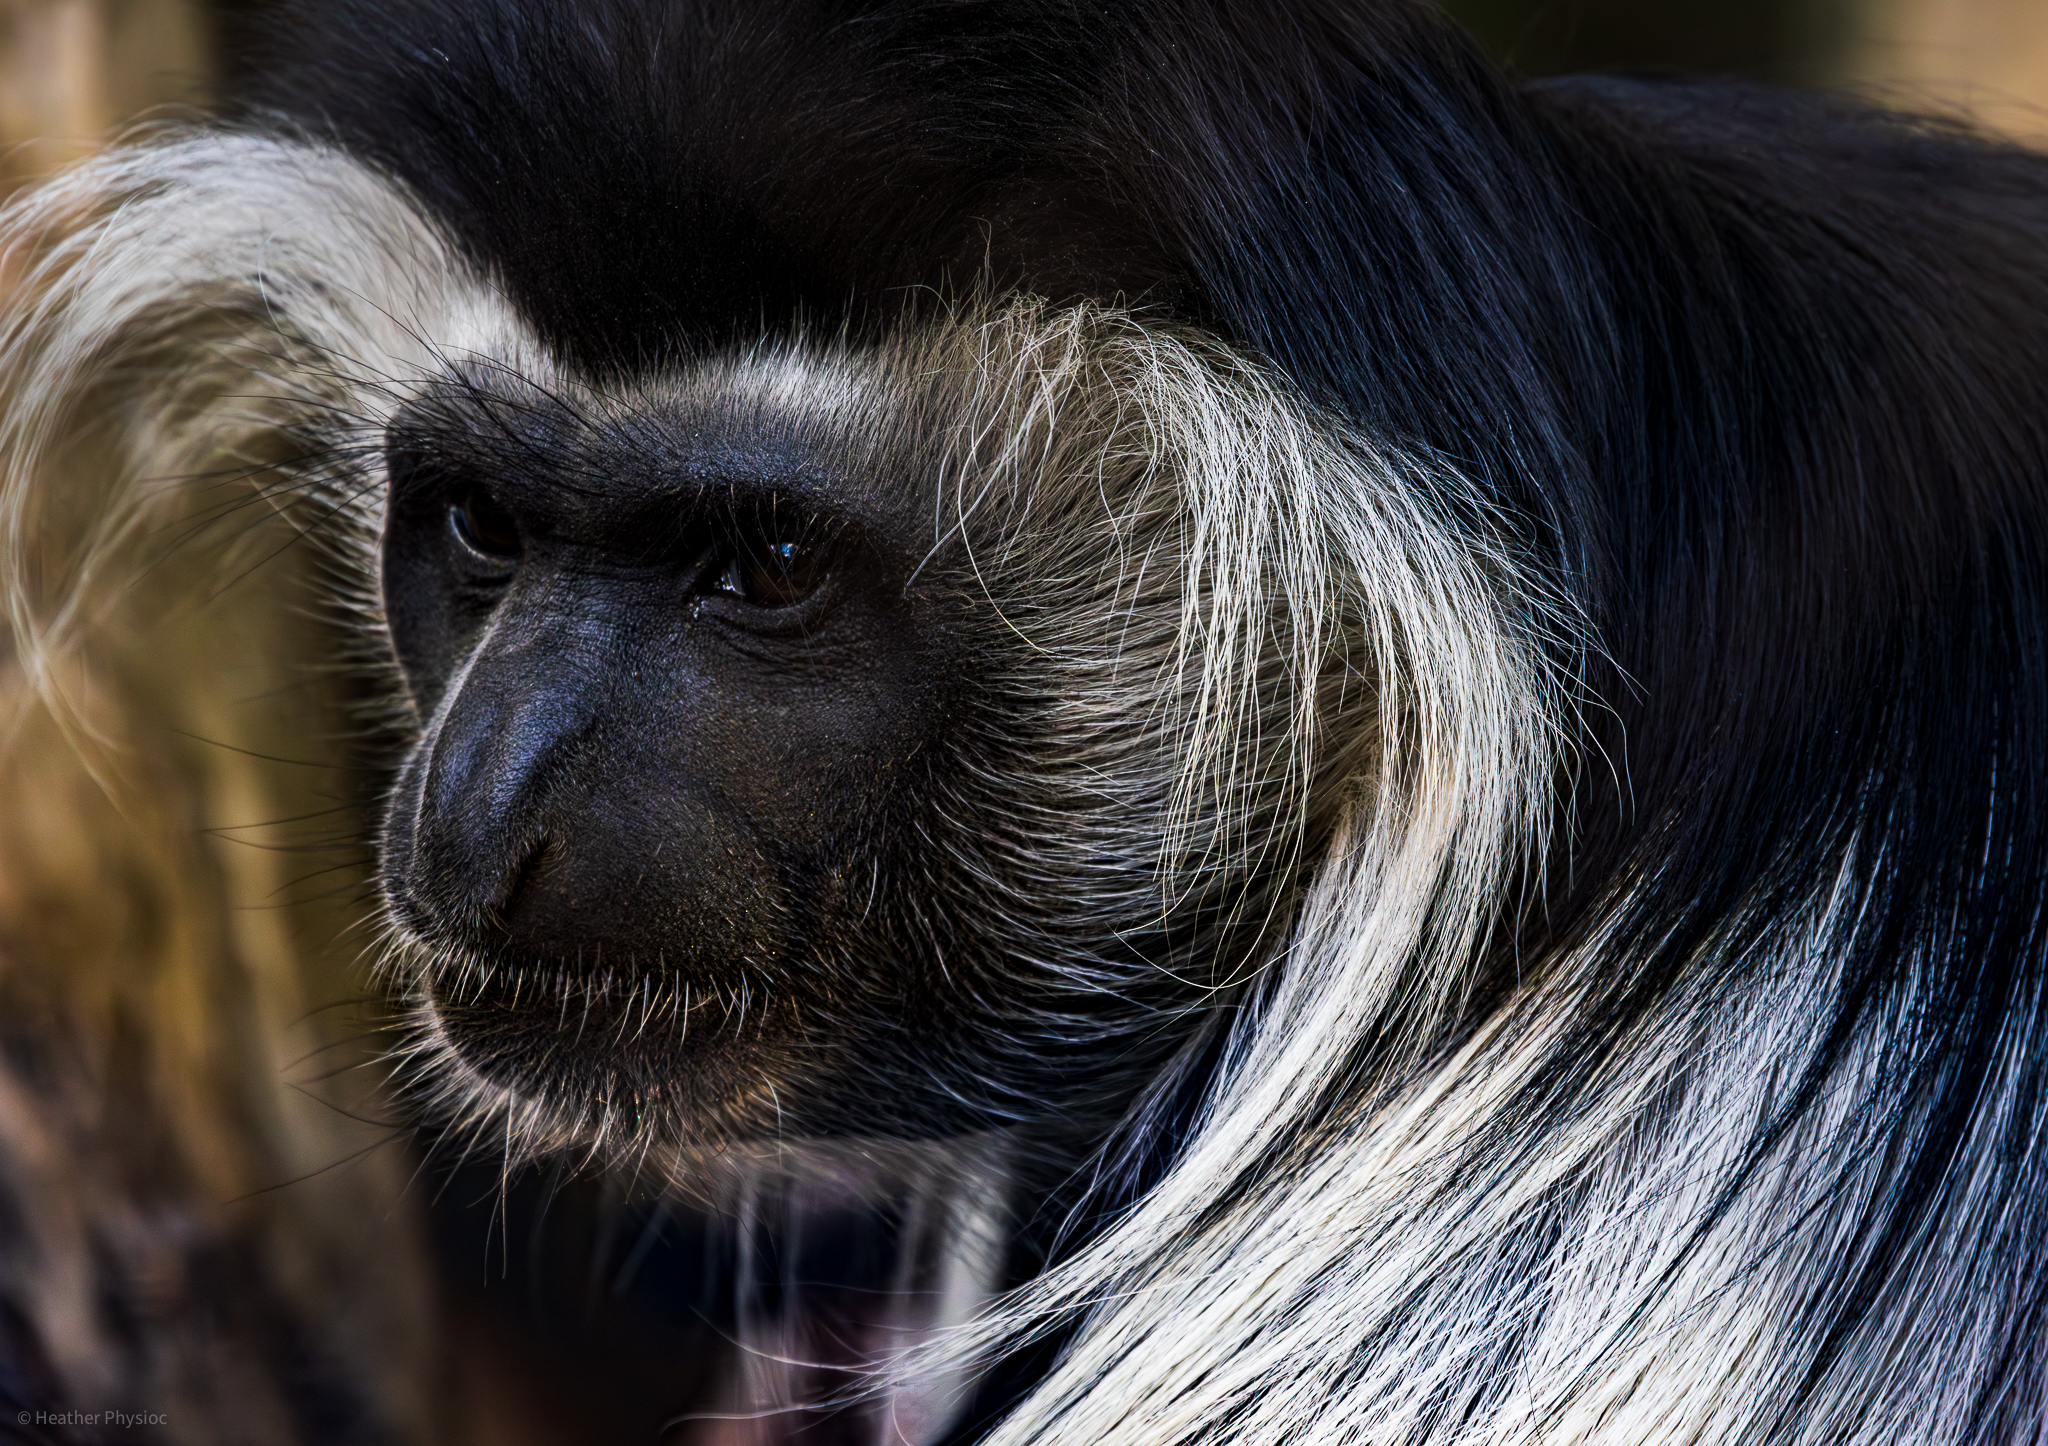 Black & White Angolan Colobus Monkey portrait at the San Diego Zoo